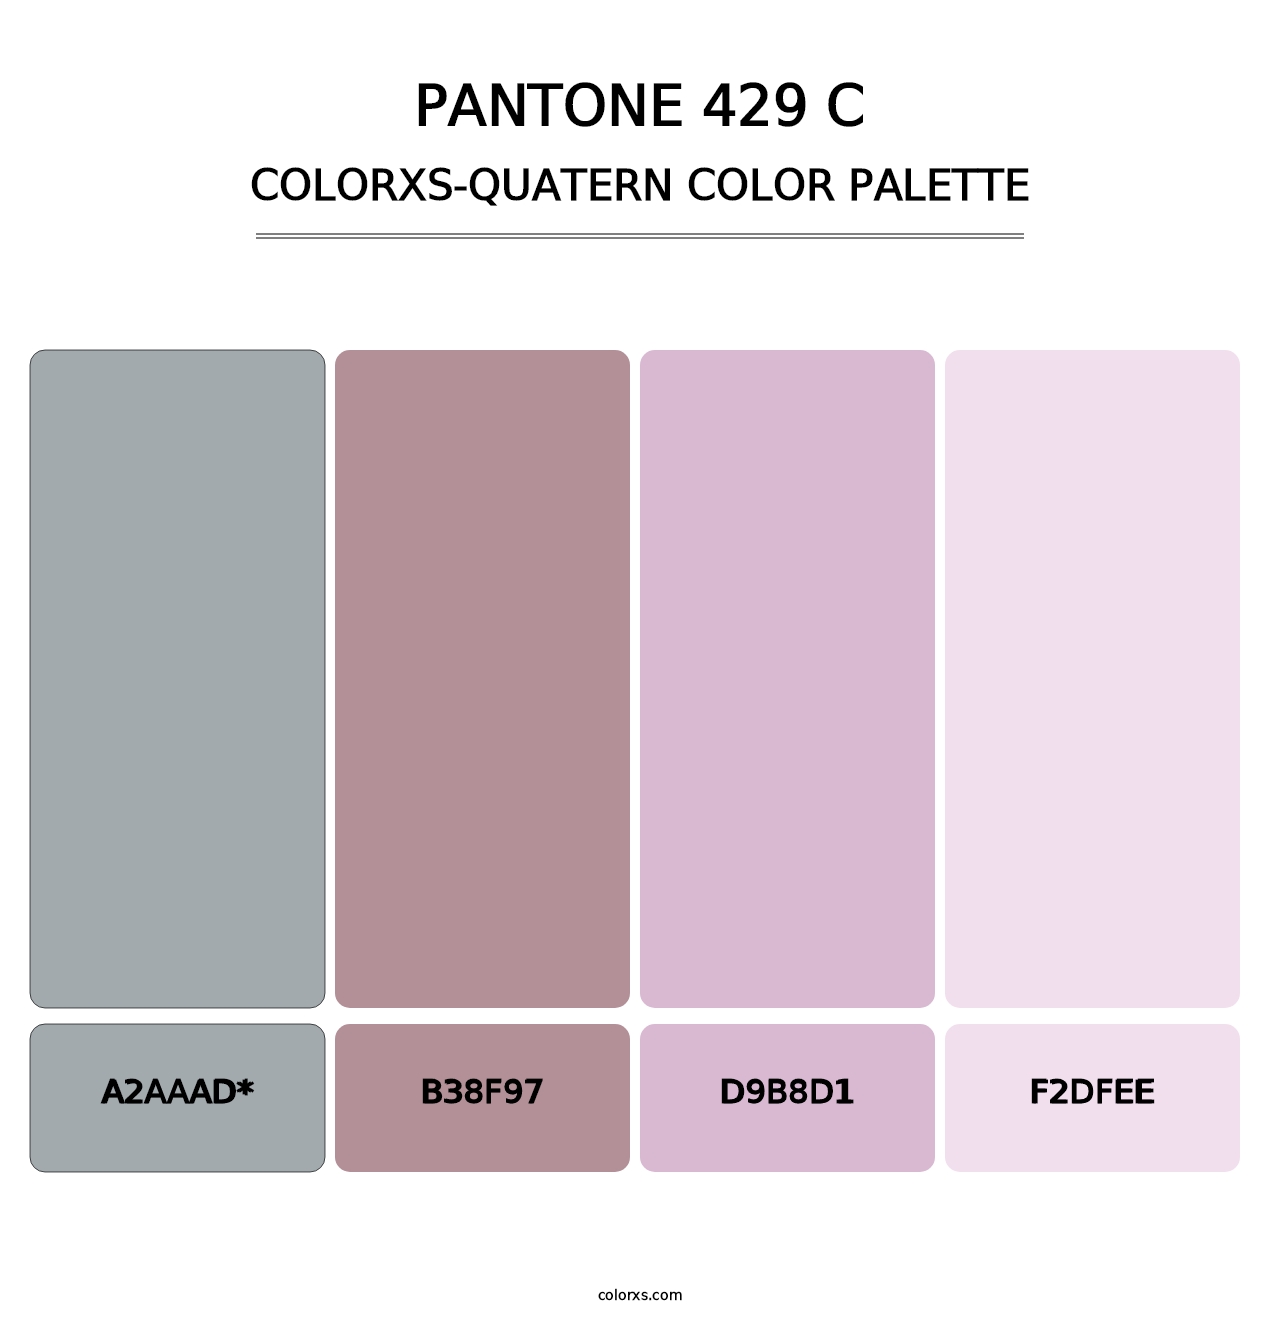 PANTONE 429 C - Colorxs Quatern Palette